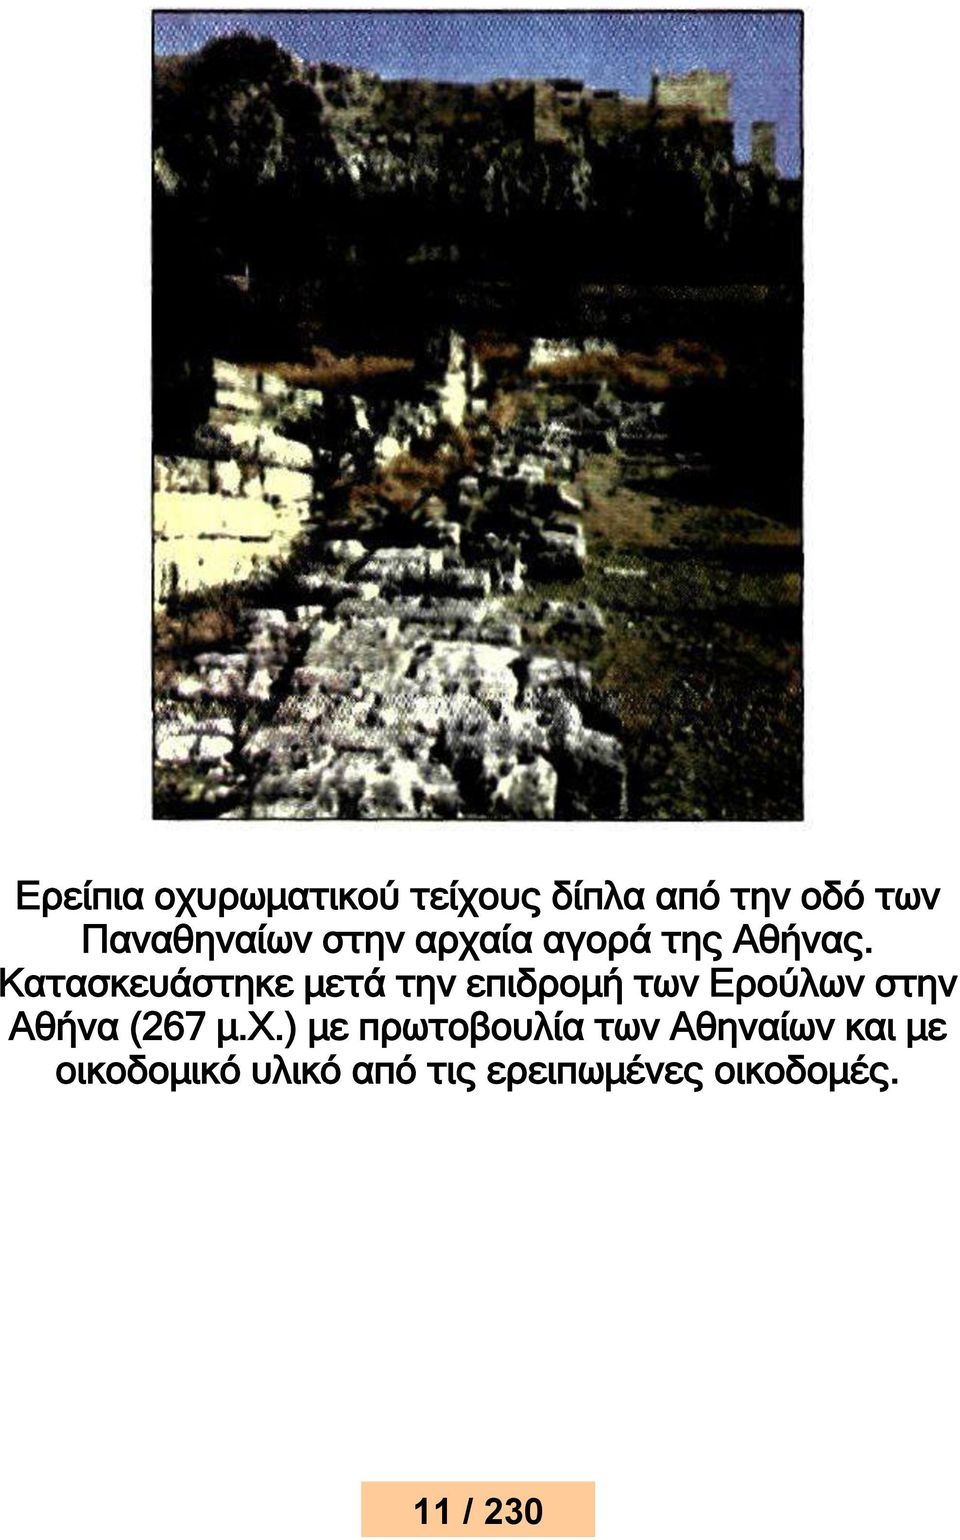 Κατασκευάστηκε μετά την επιδρομή των Ερούλων στην Αθήνα (267 μ.